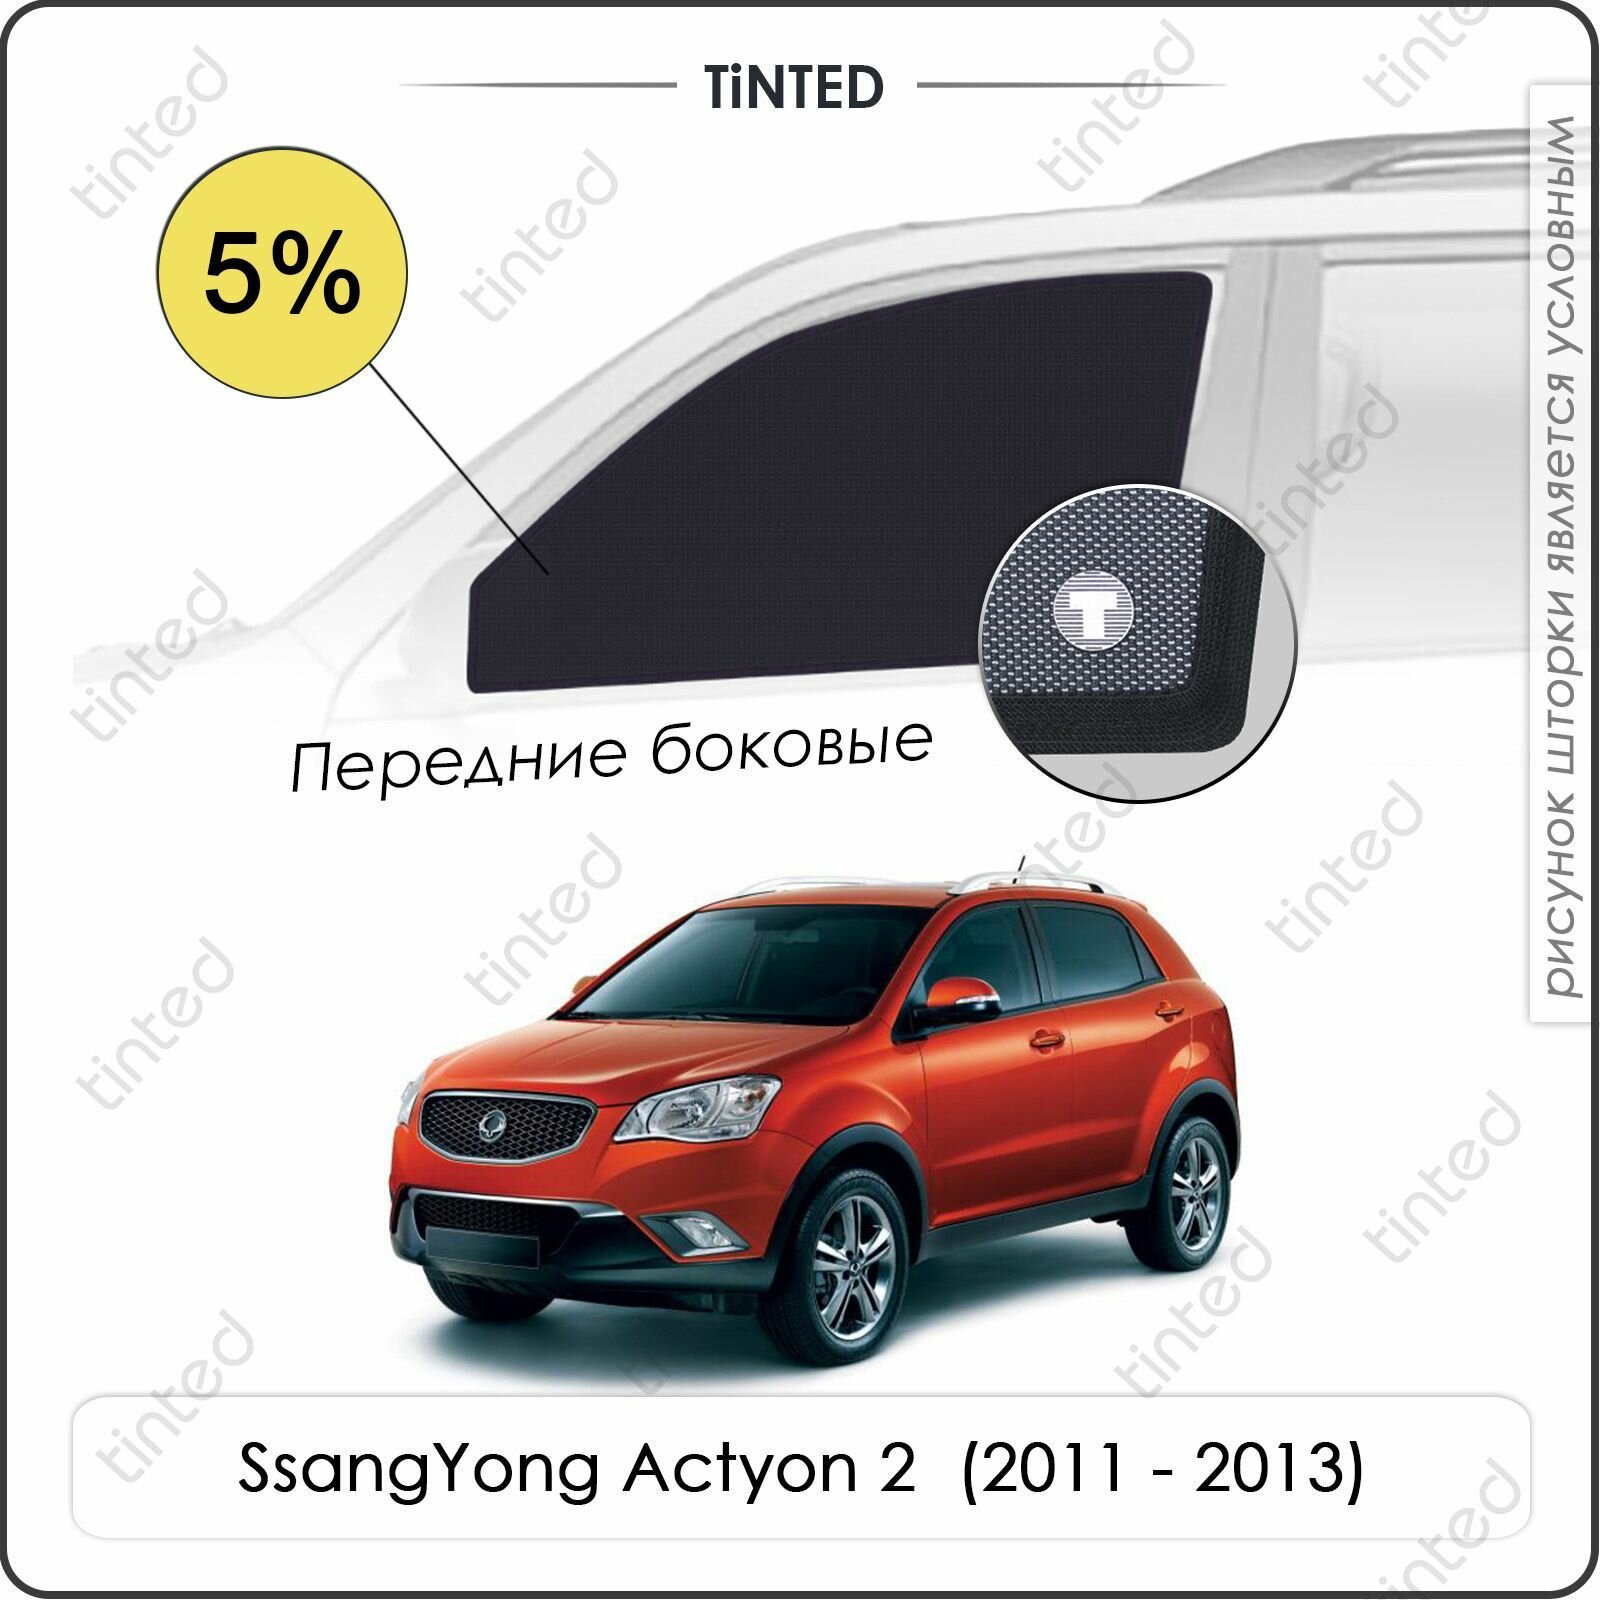 Шторки на автомобиль солнцезащитные SsangYong Actyon 2 Кроссовер 5дв. (2011 - 2013) на передние двери 5% сетки от солнца в машину ссангйонг актион Каркасные автошторки Premium